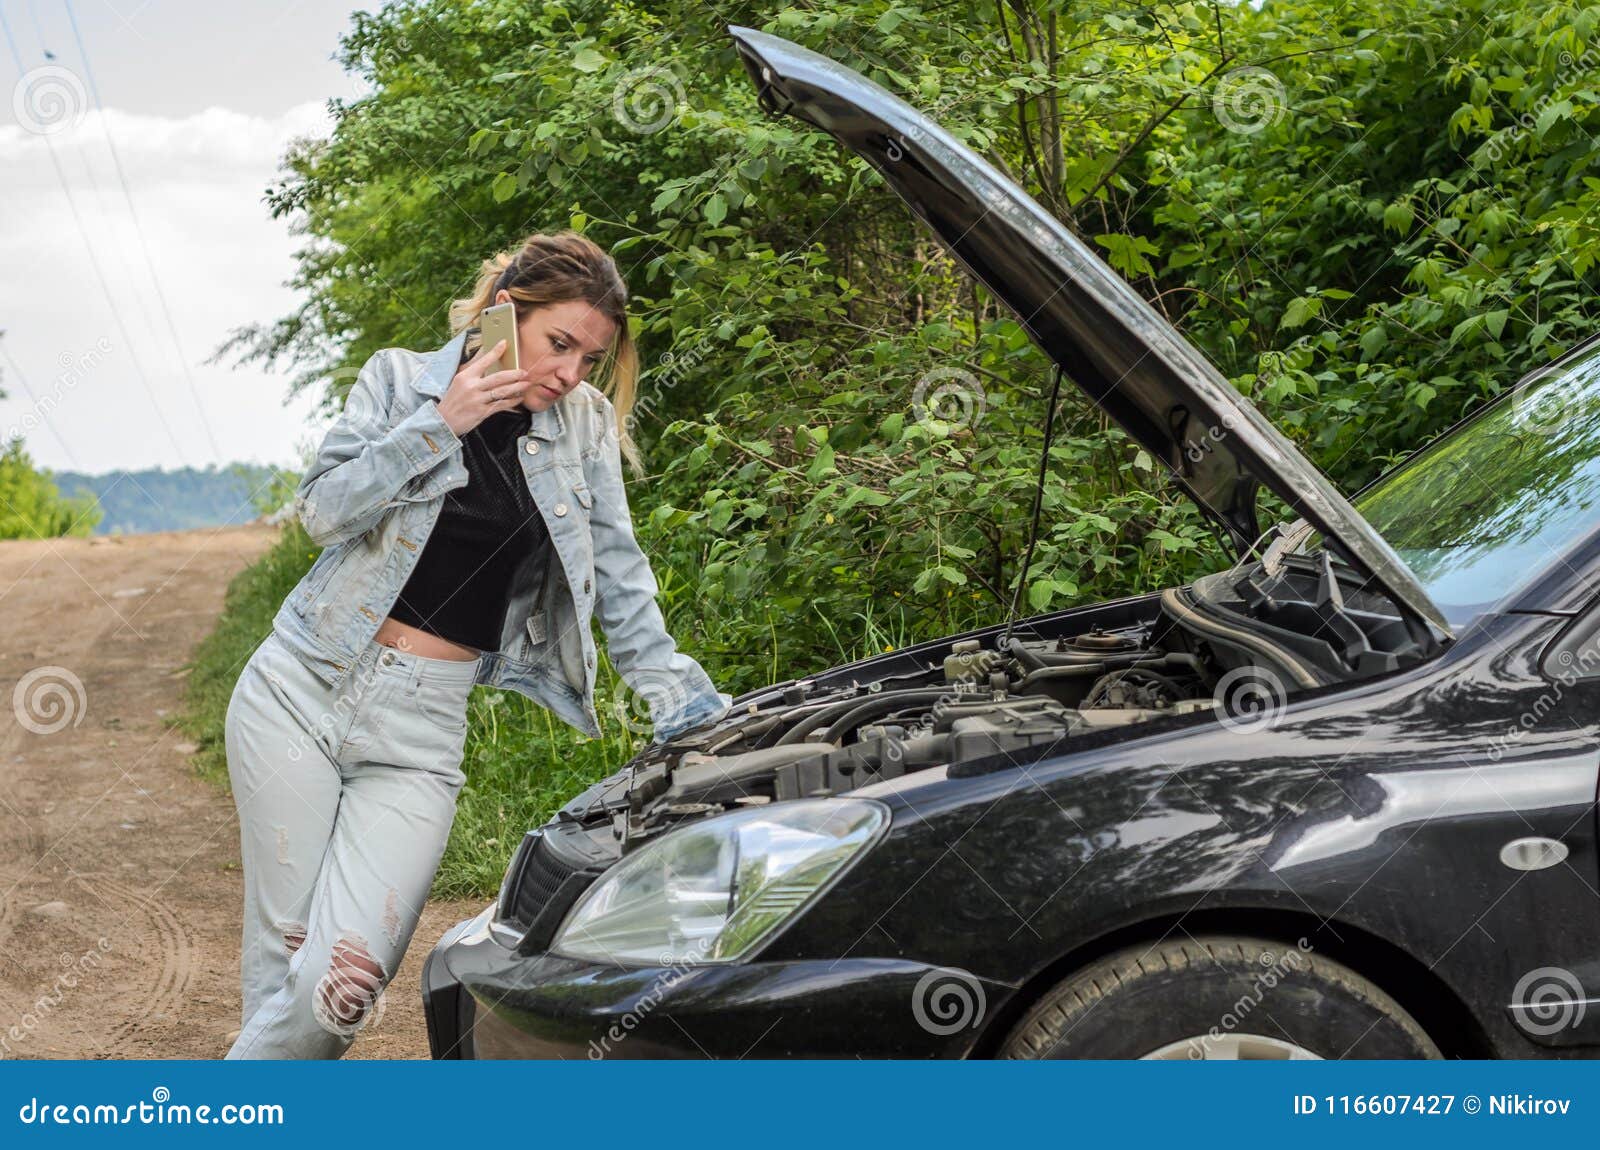 Девушка разбила машину. У девушки сломалась машина. Девушка у разбитой машины. Девушка со сломанной машиной. Девушка возле разбитой машины.